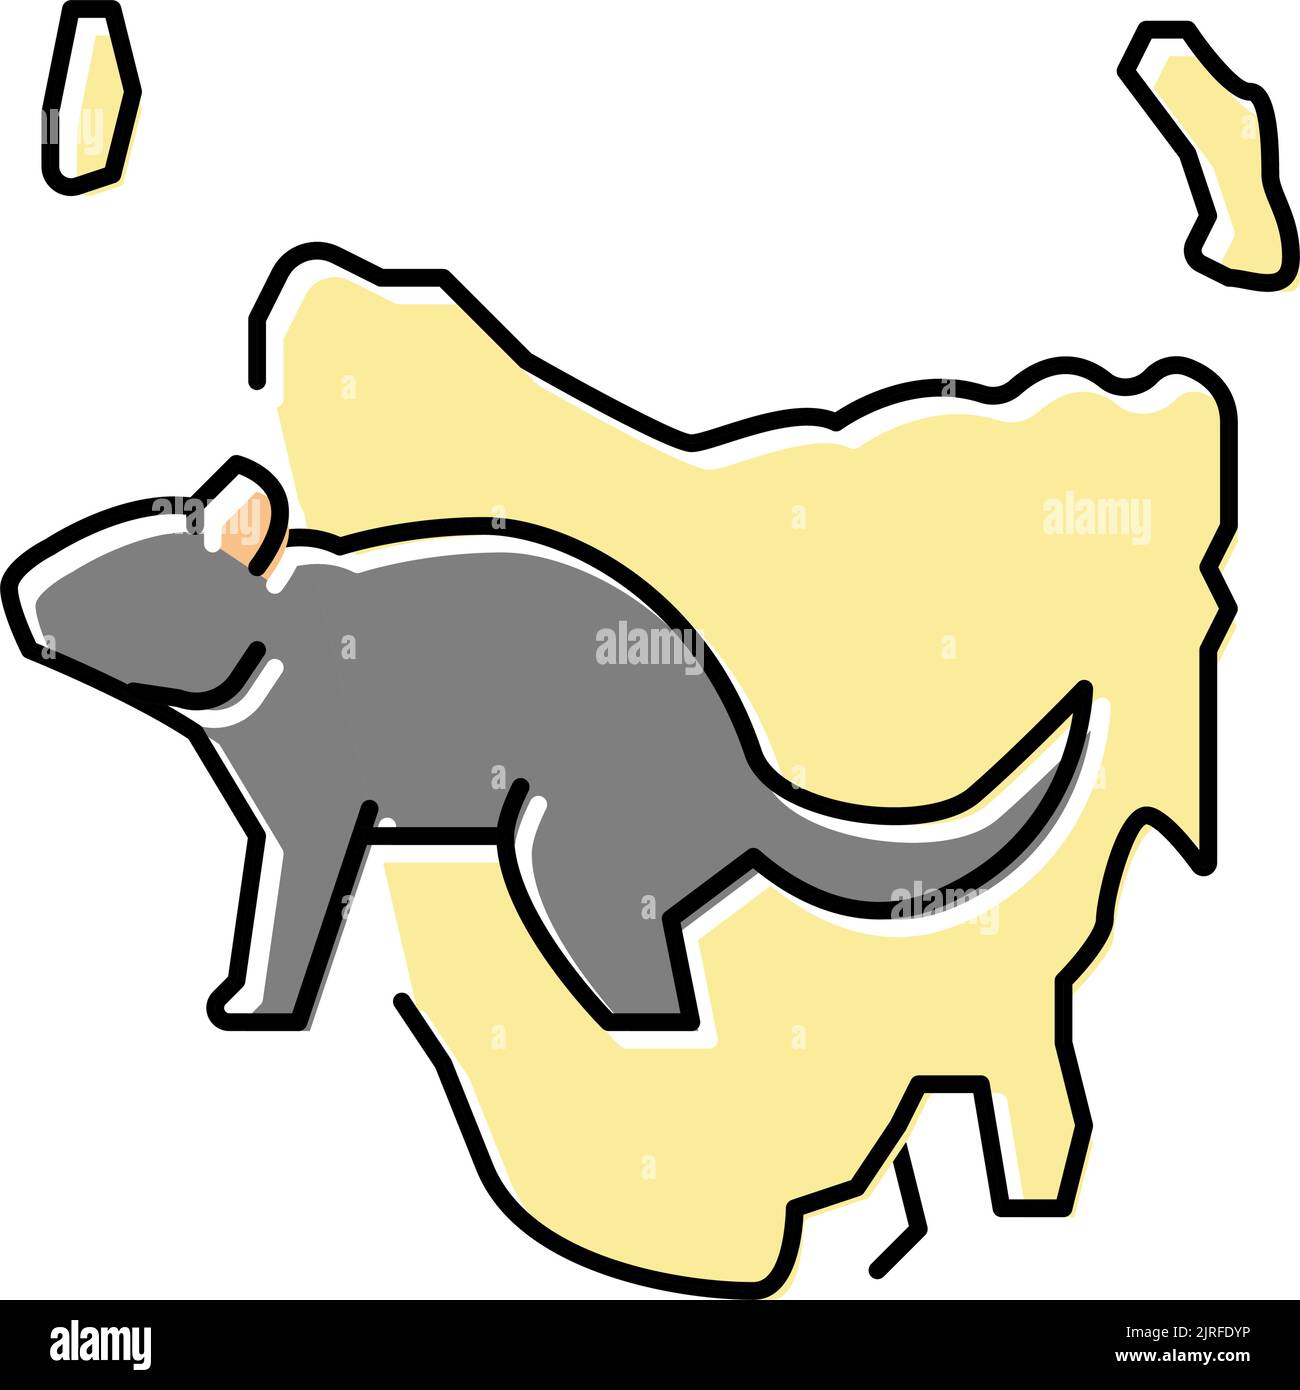 abbildung des Symbols für tierfarben in tasmanien Stock Vektor